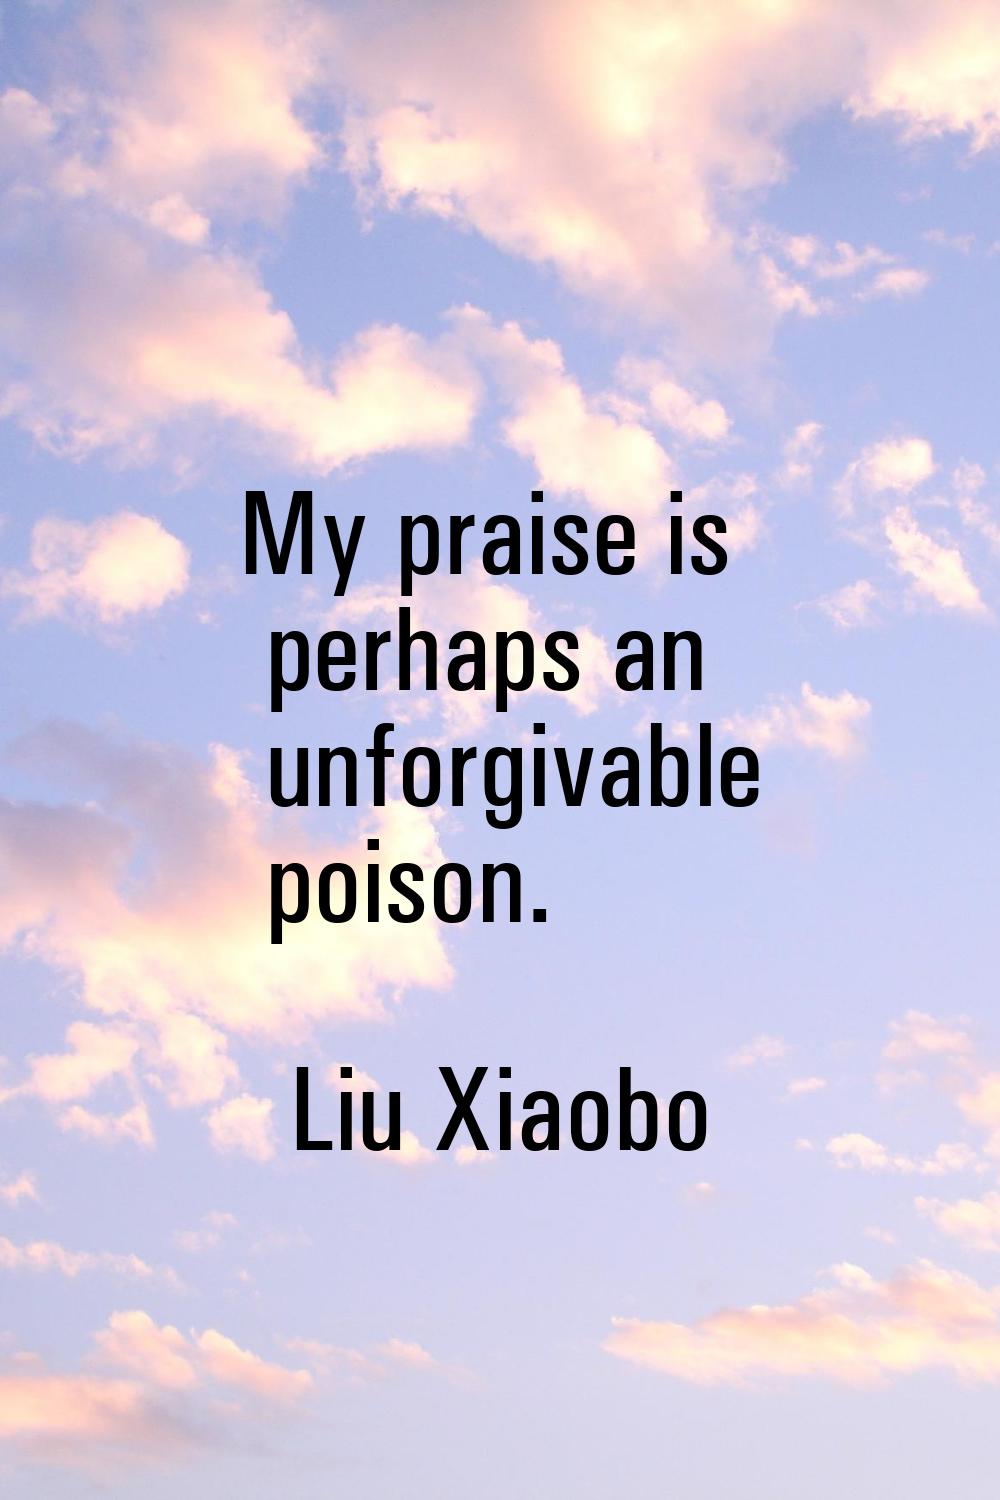 My praise is perhaps an unforgivable poison.